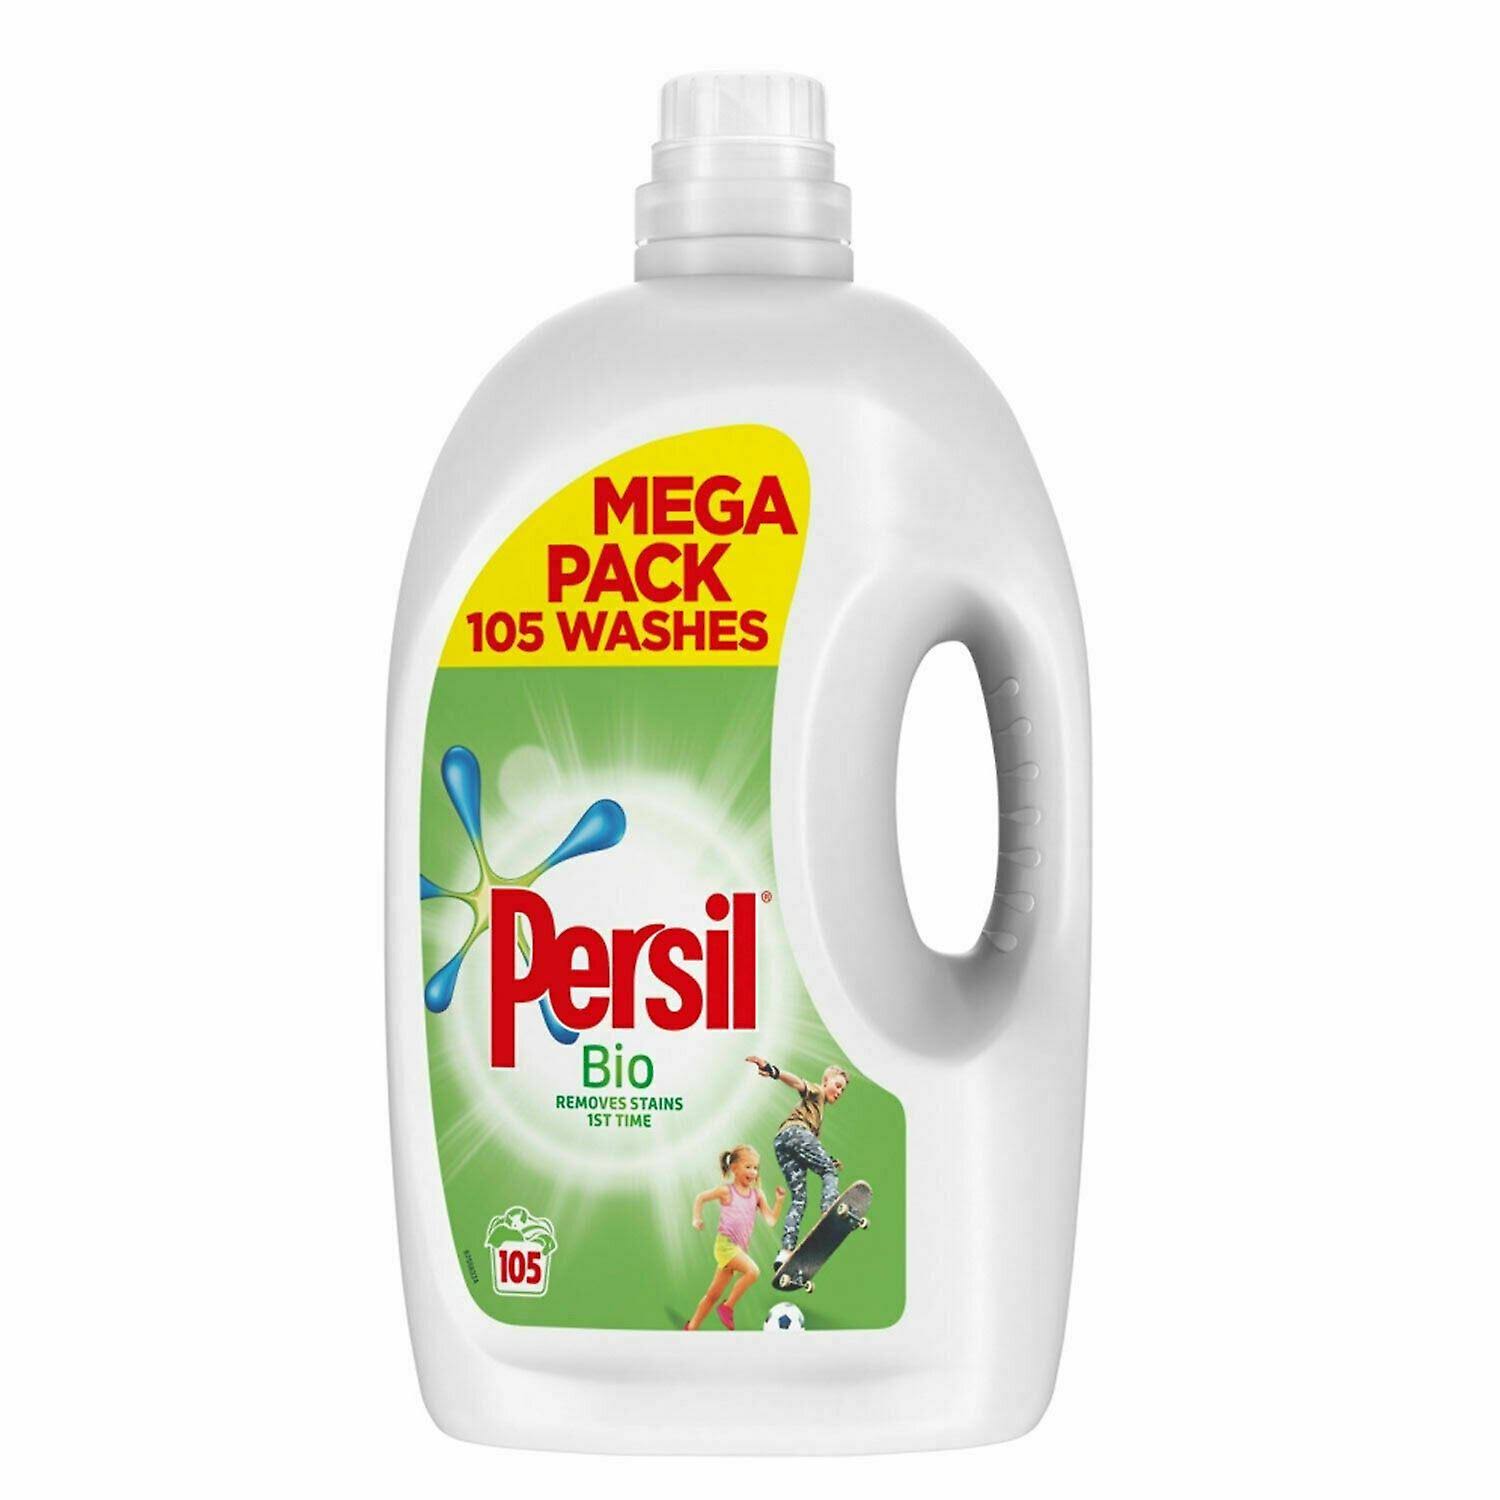 Persil Liquid 105 Washes: Bio